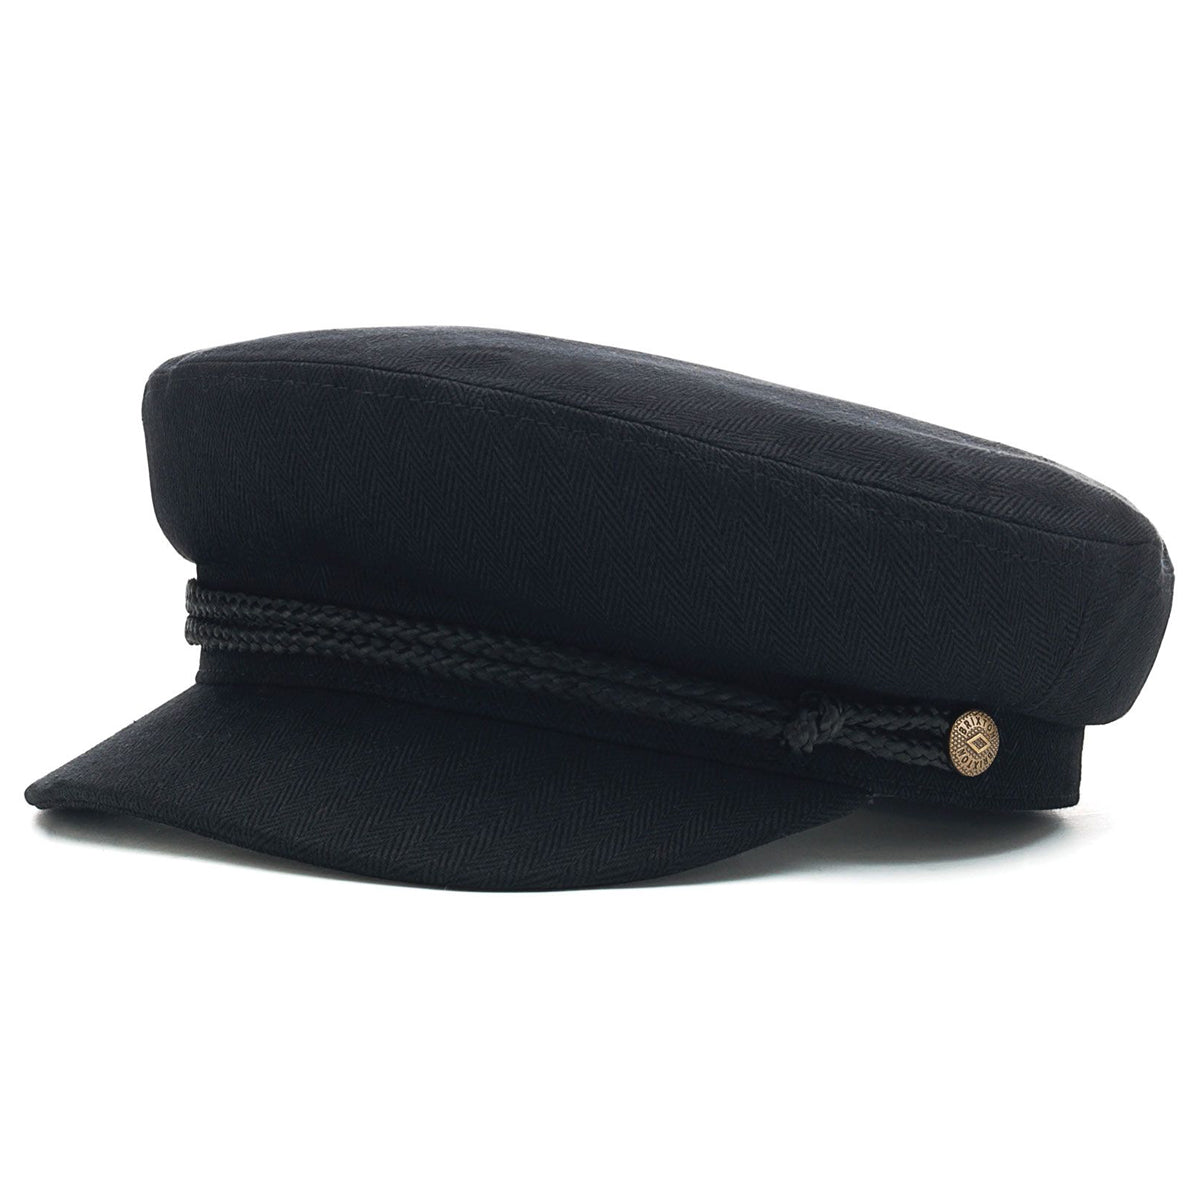 Brixton Fiddler Hat - Black image 1